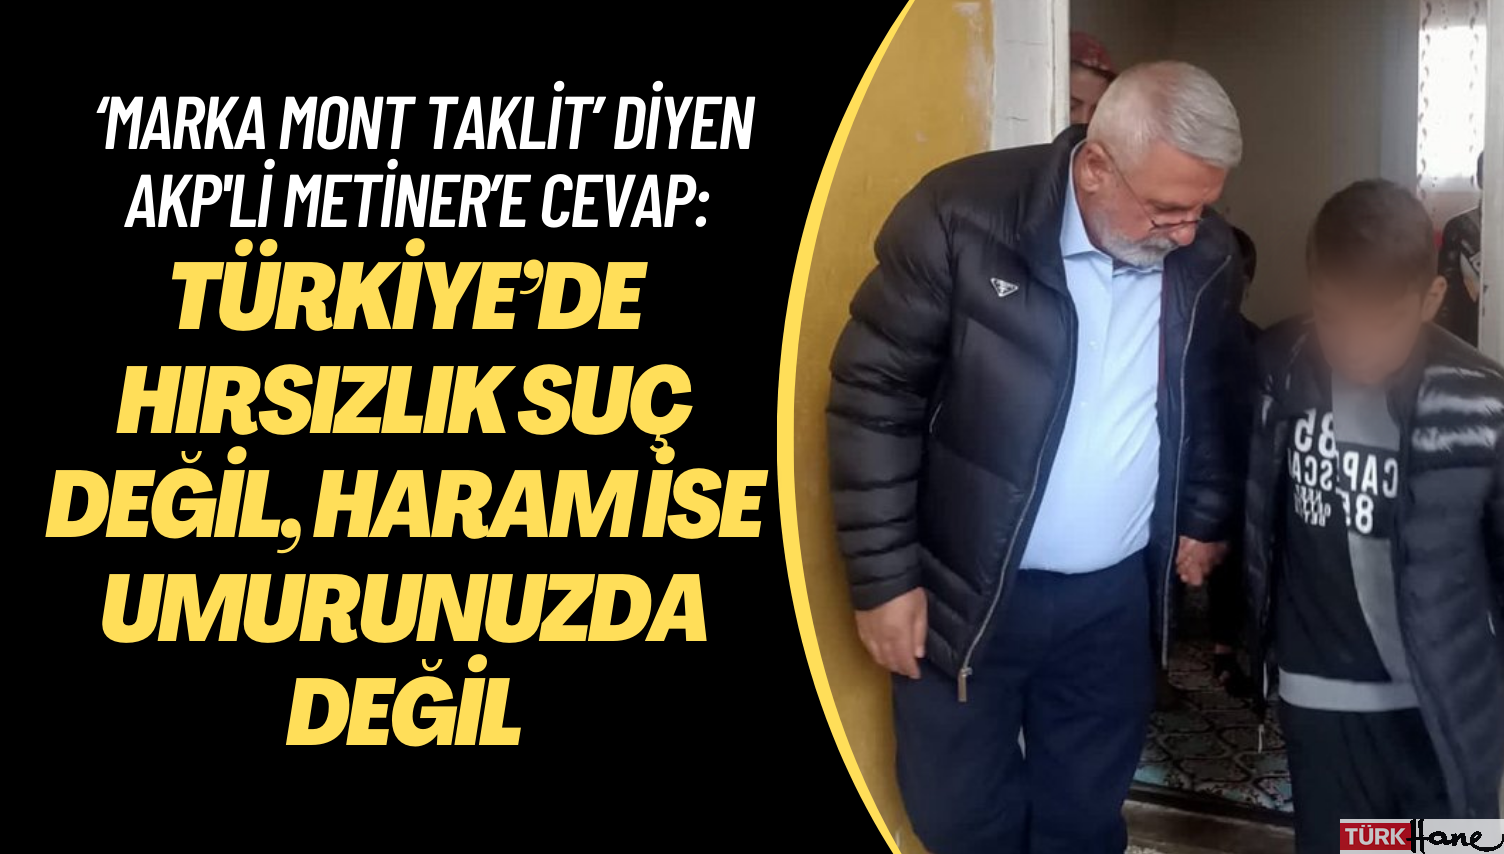 ‘Marka mont taklit’ diyen AKP’li Metiner’e cevap: Türkiye’de hırsızlık suç değil, haram ise umurunuzda deği